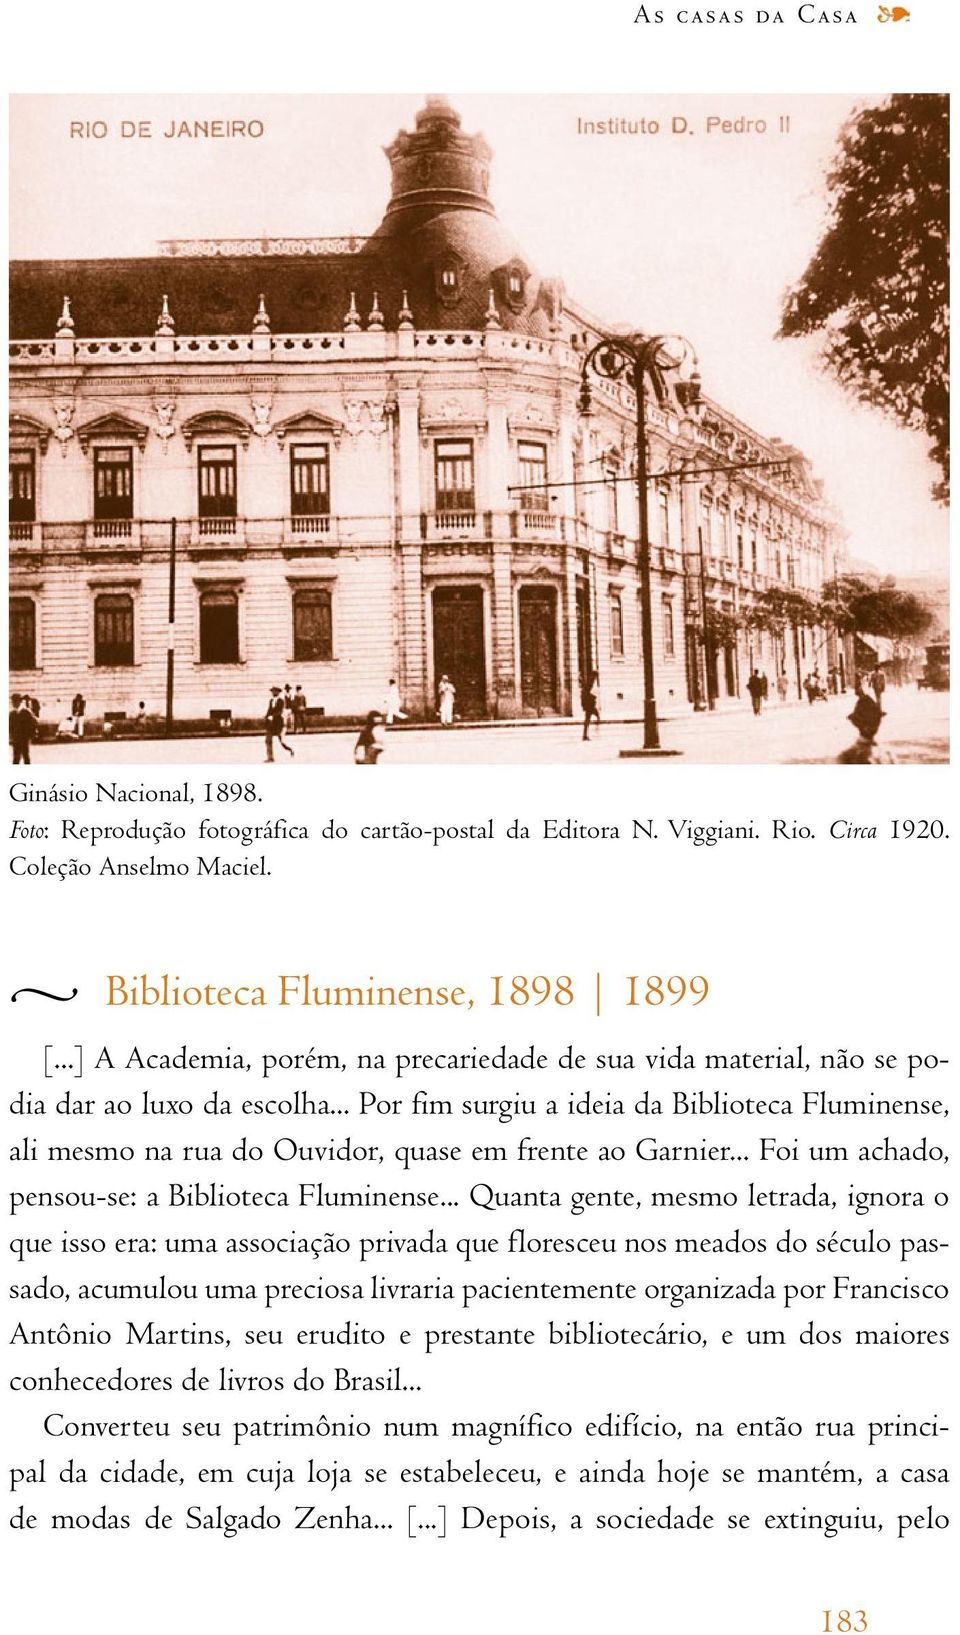 .. Por fim surgiu a ideia da Biblioteca Fluminense, ali mesmo na rua do Ouvidor, quase em frente ao Garnier... Foi um achado, pensou-se: a Biblioteca Fluminense.